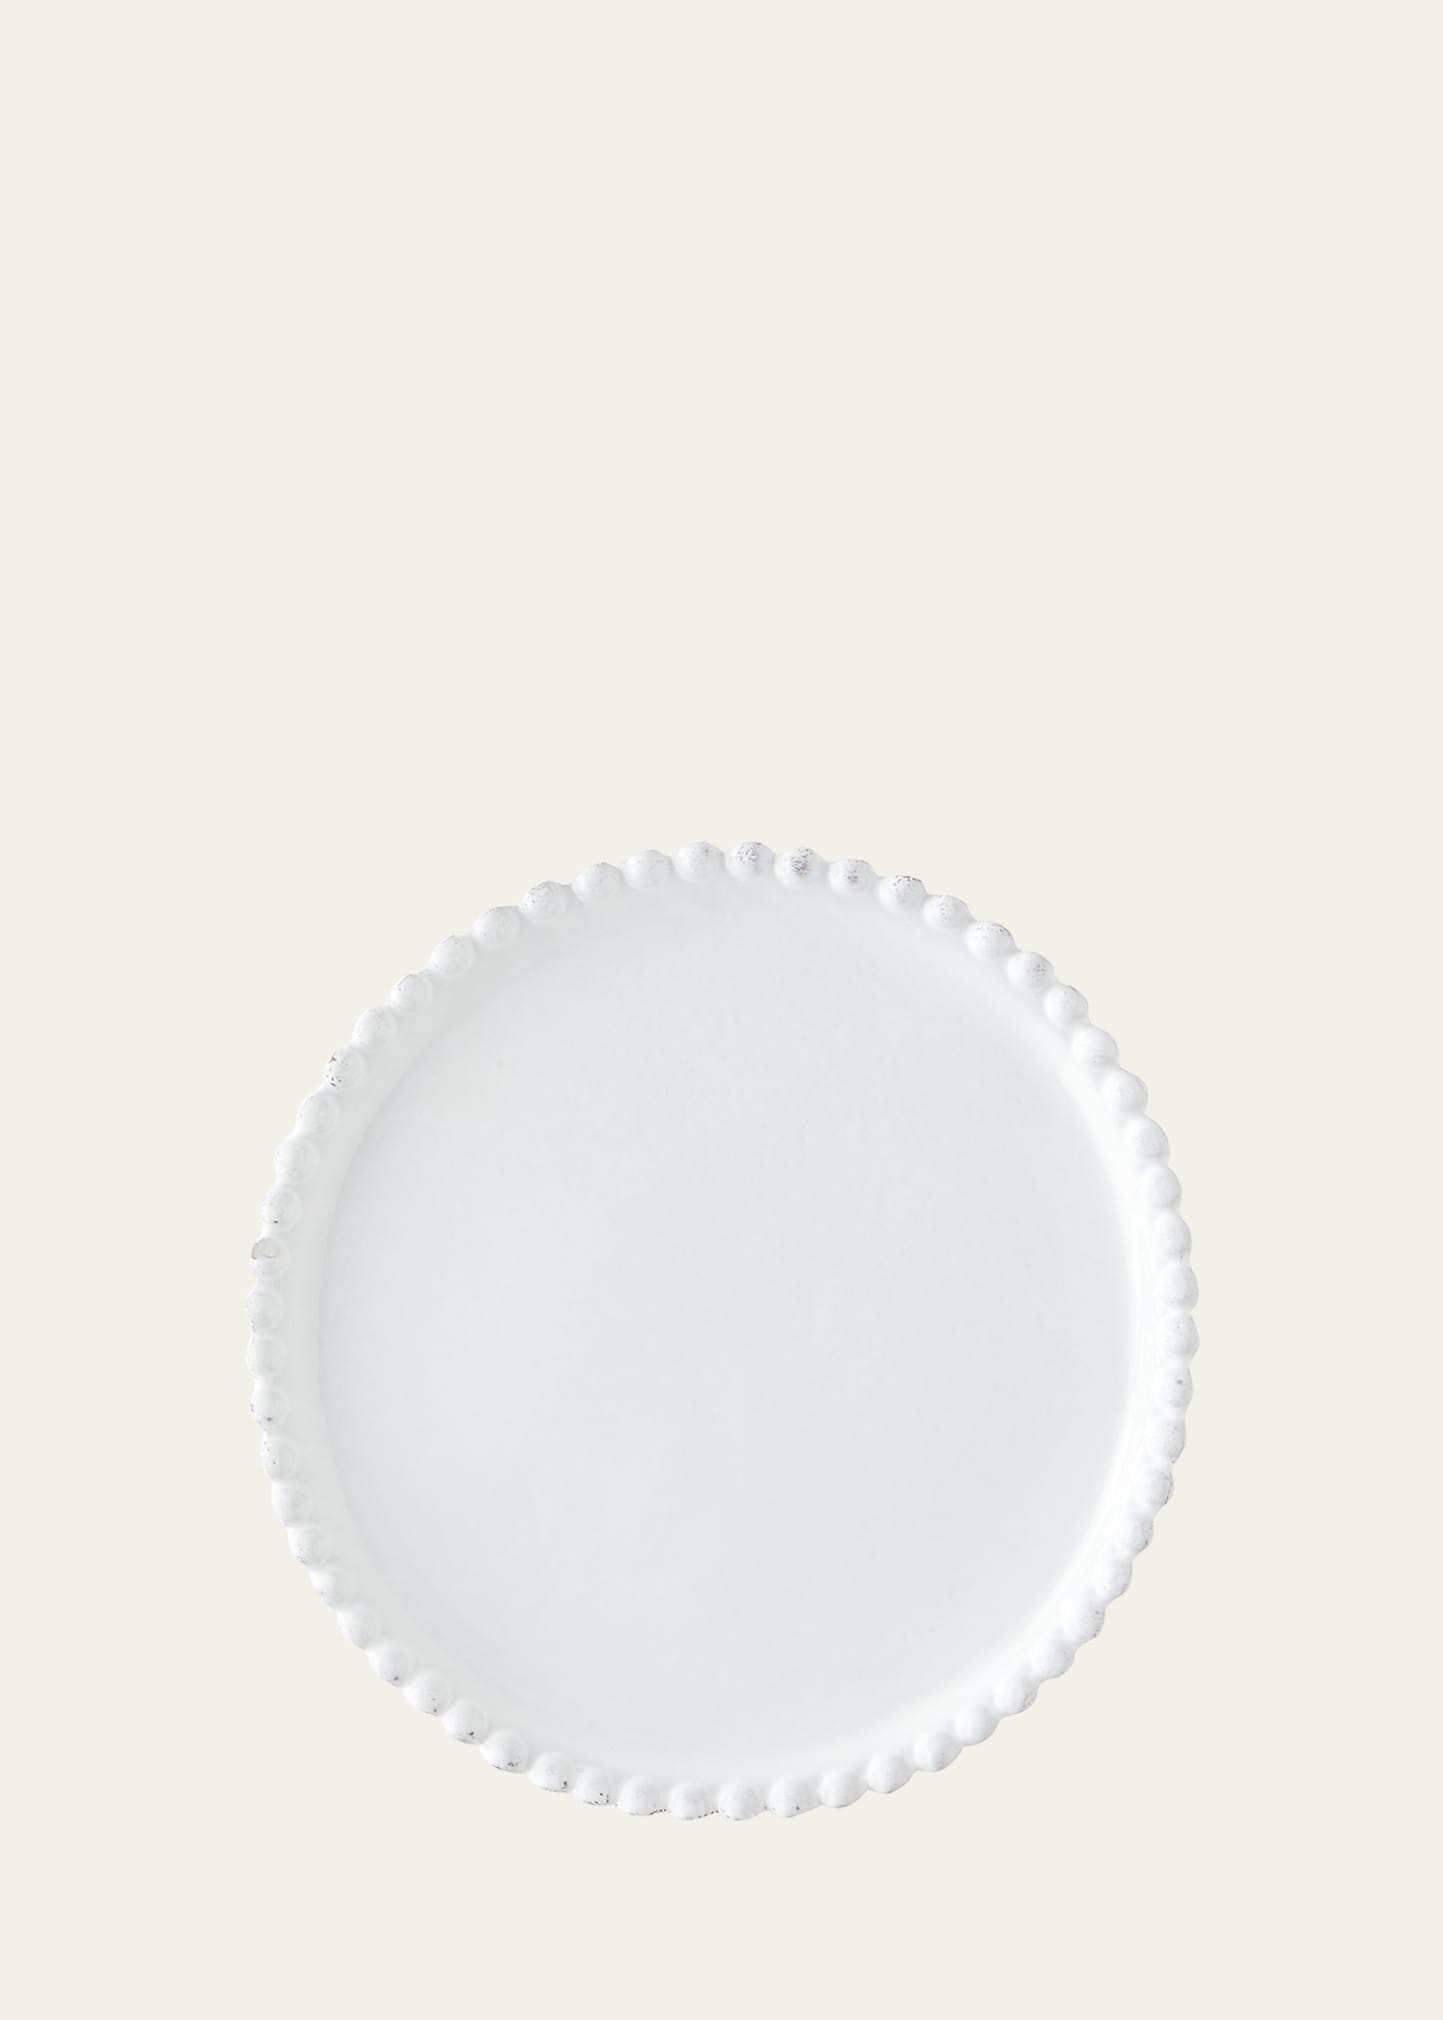 Astier De Vilatte Adelaide Side Plate In White